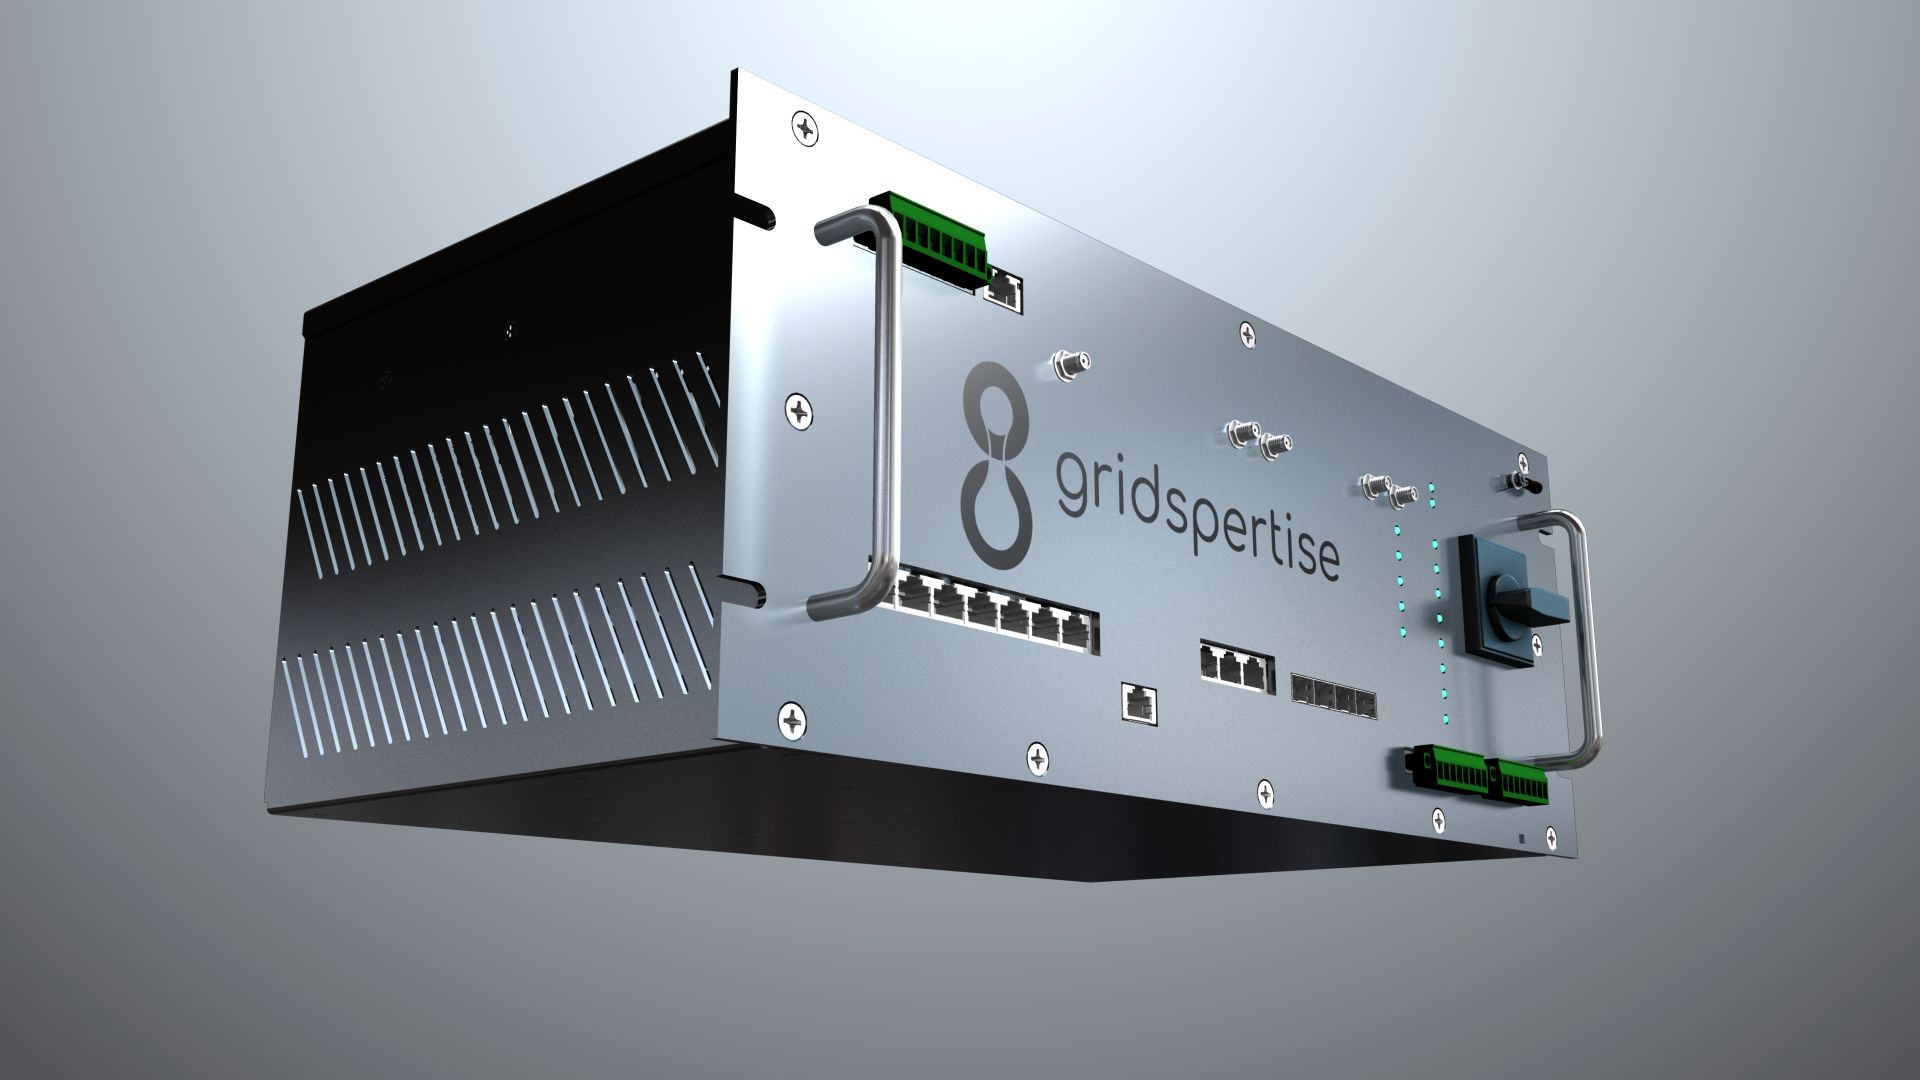 Quantum Edge Device, solución de Gridspertise para transformación digital de las redes eléctricas.